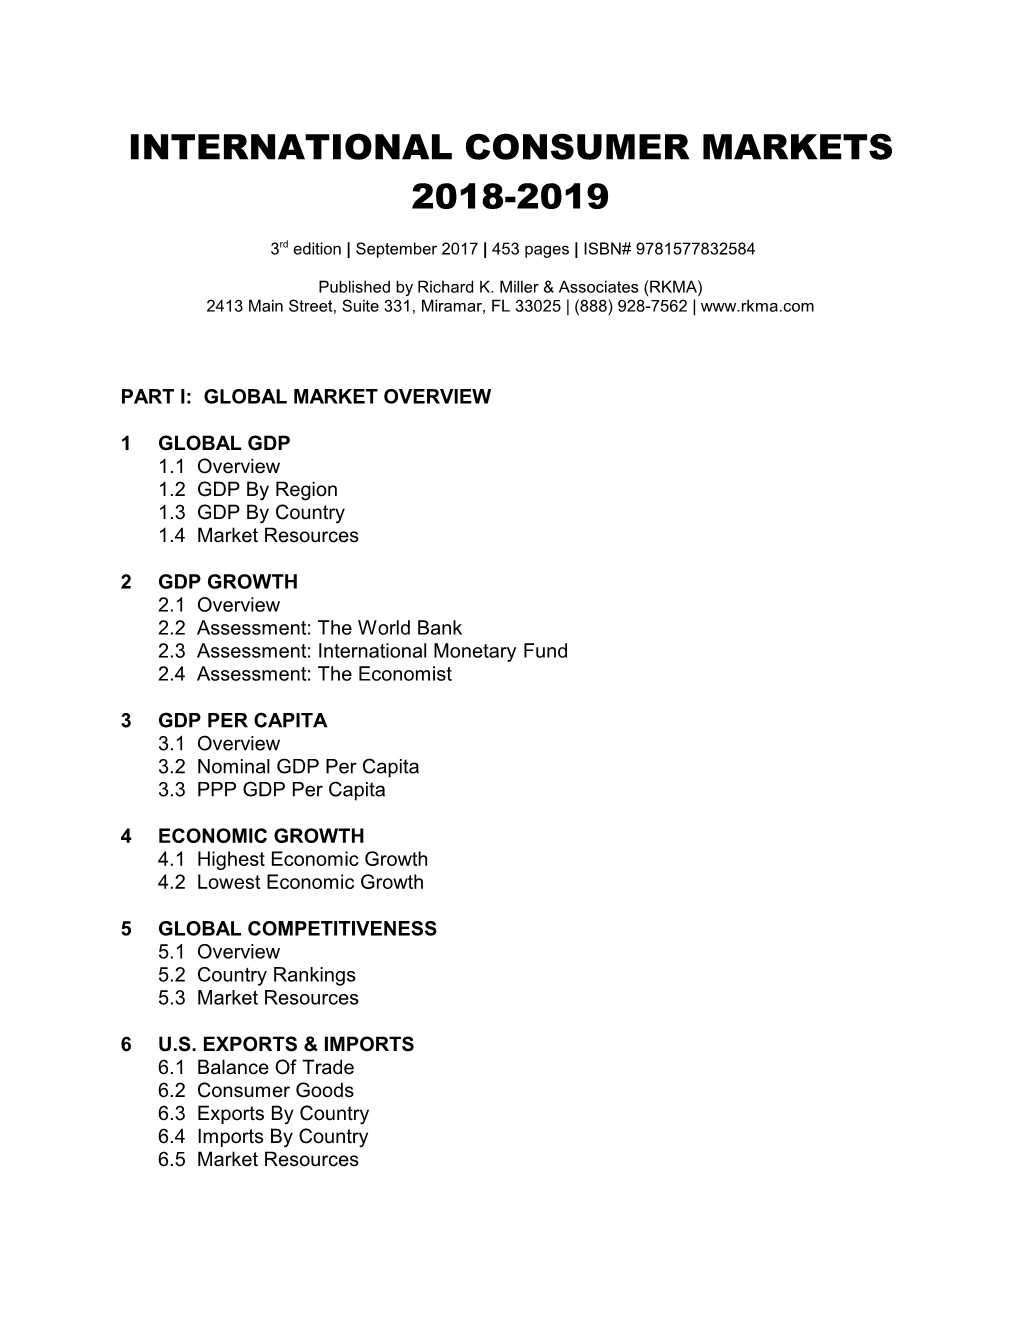 International Consumer Markets 2018-2019